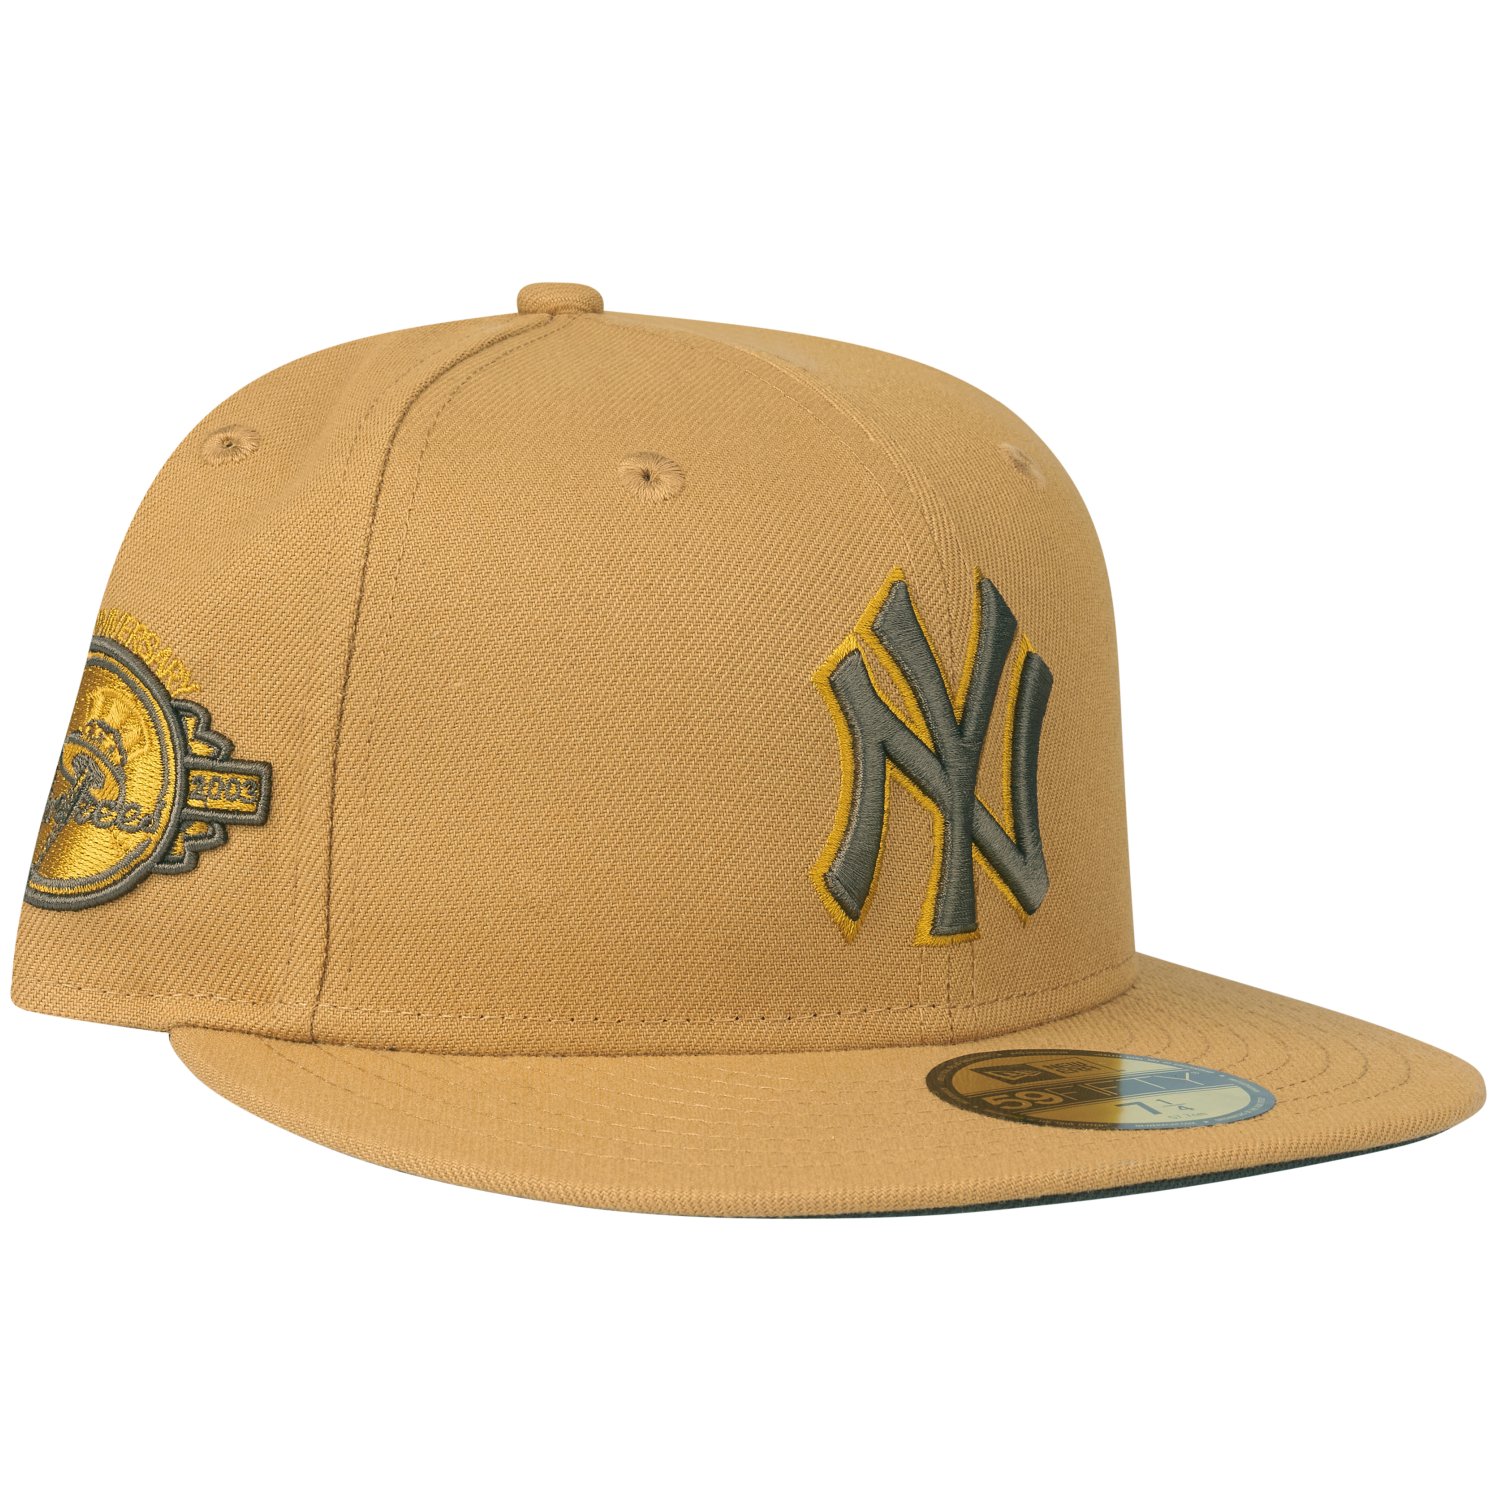 New Era 9Fifty Snapback Cap New York Yankees panama tan 